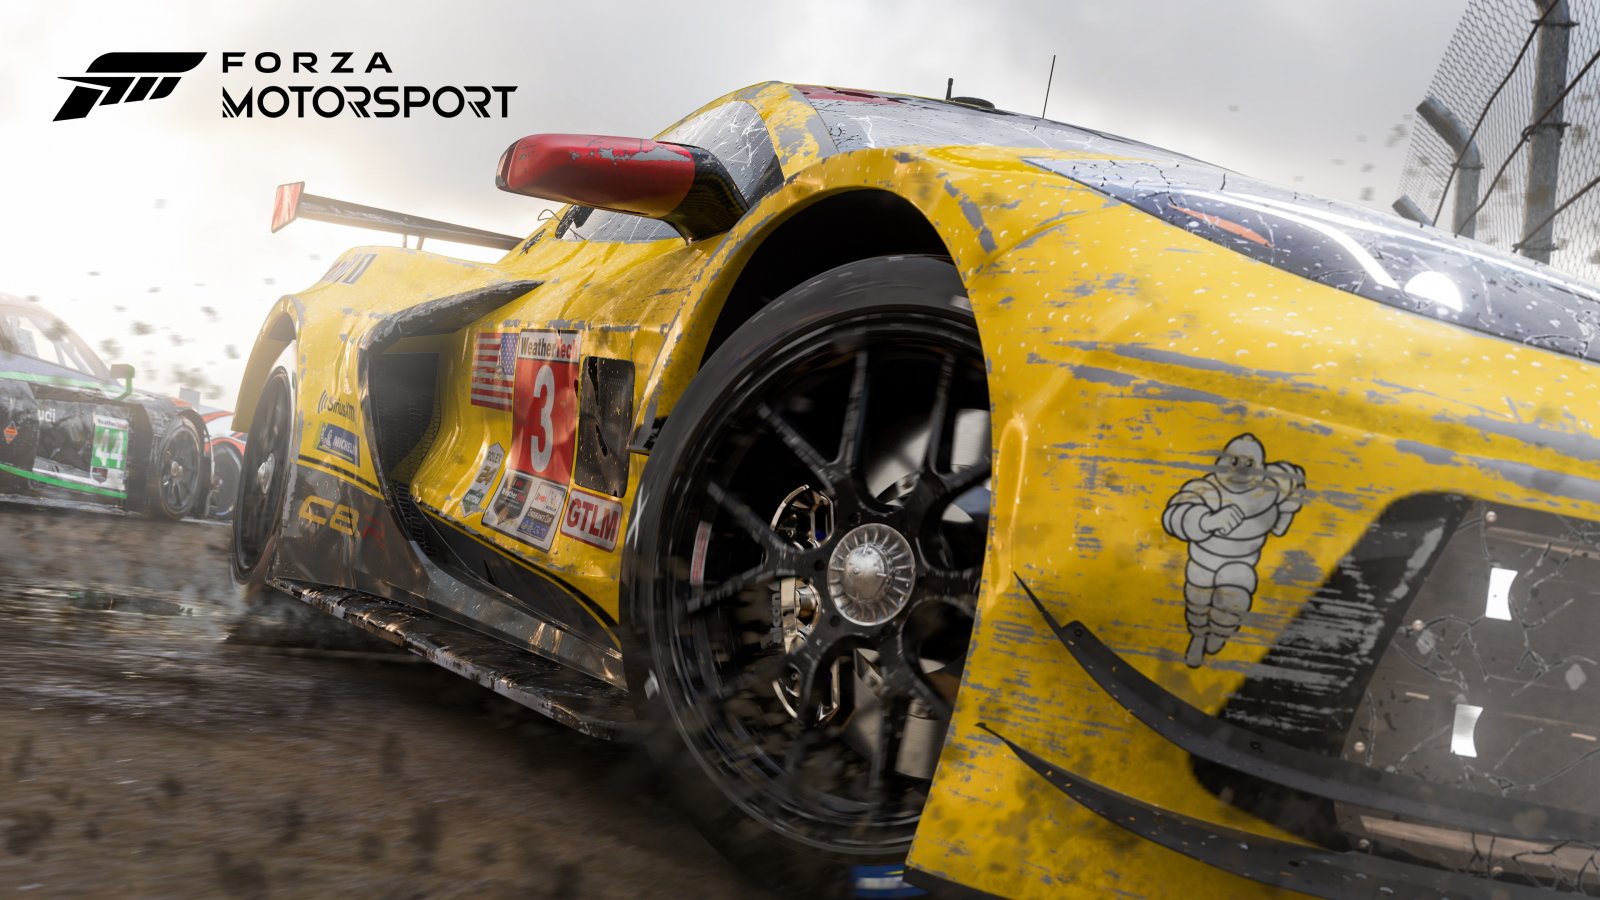 Forza Motorsport ha una media dei voti inferiore a Gran Turismo 7